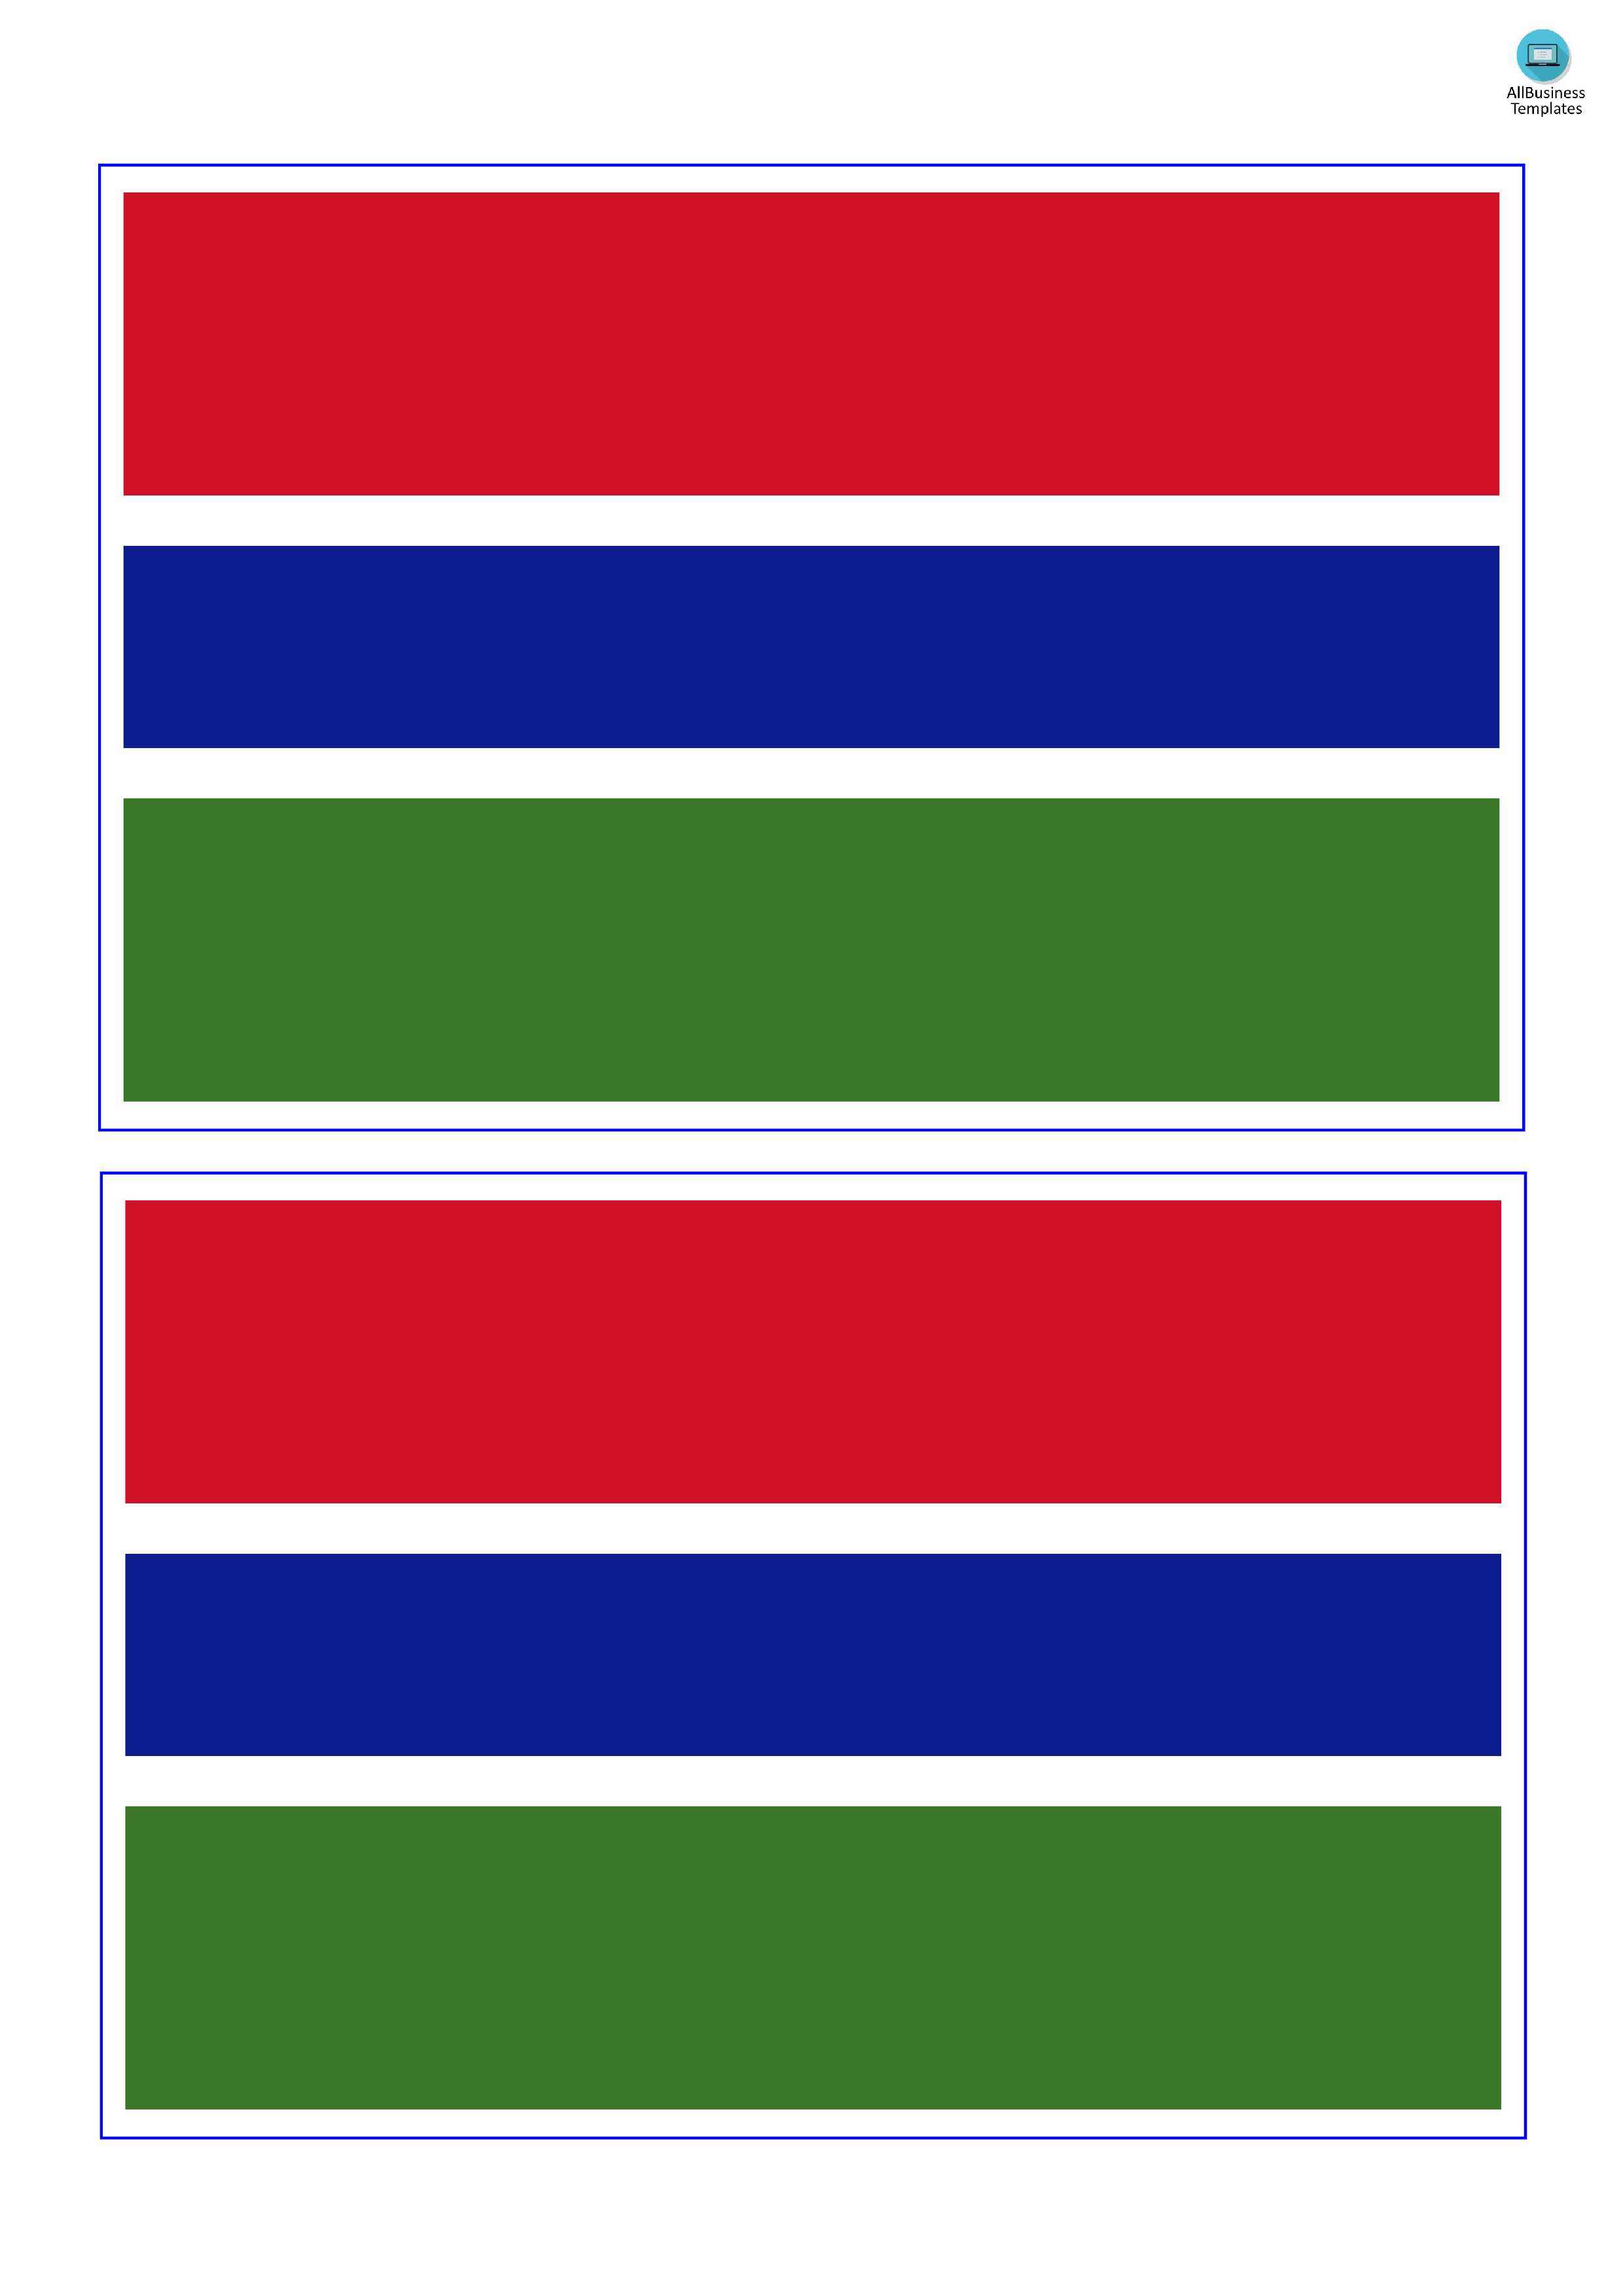 gambia flag plantilla imagen principal